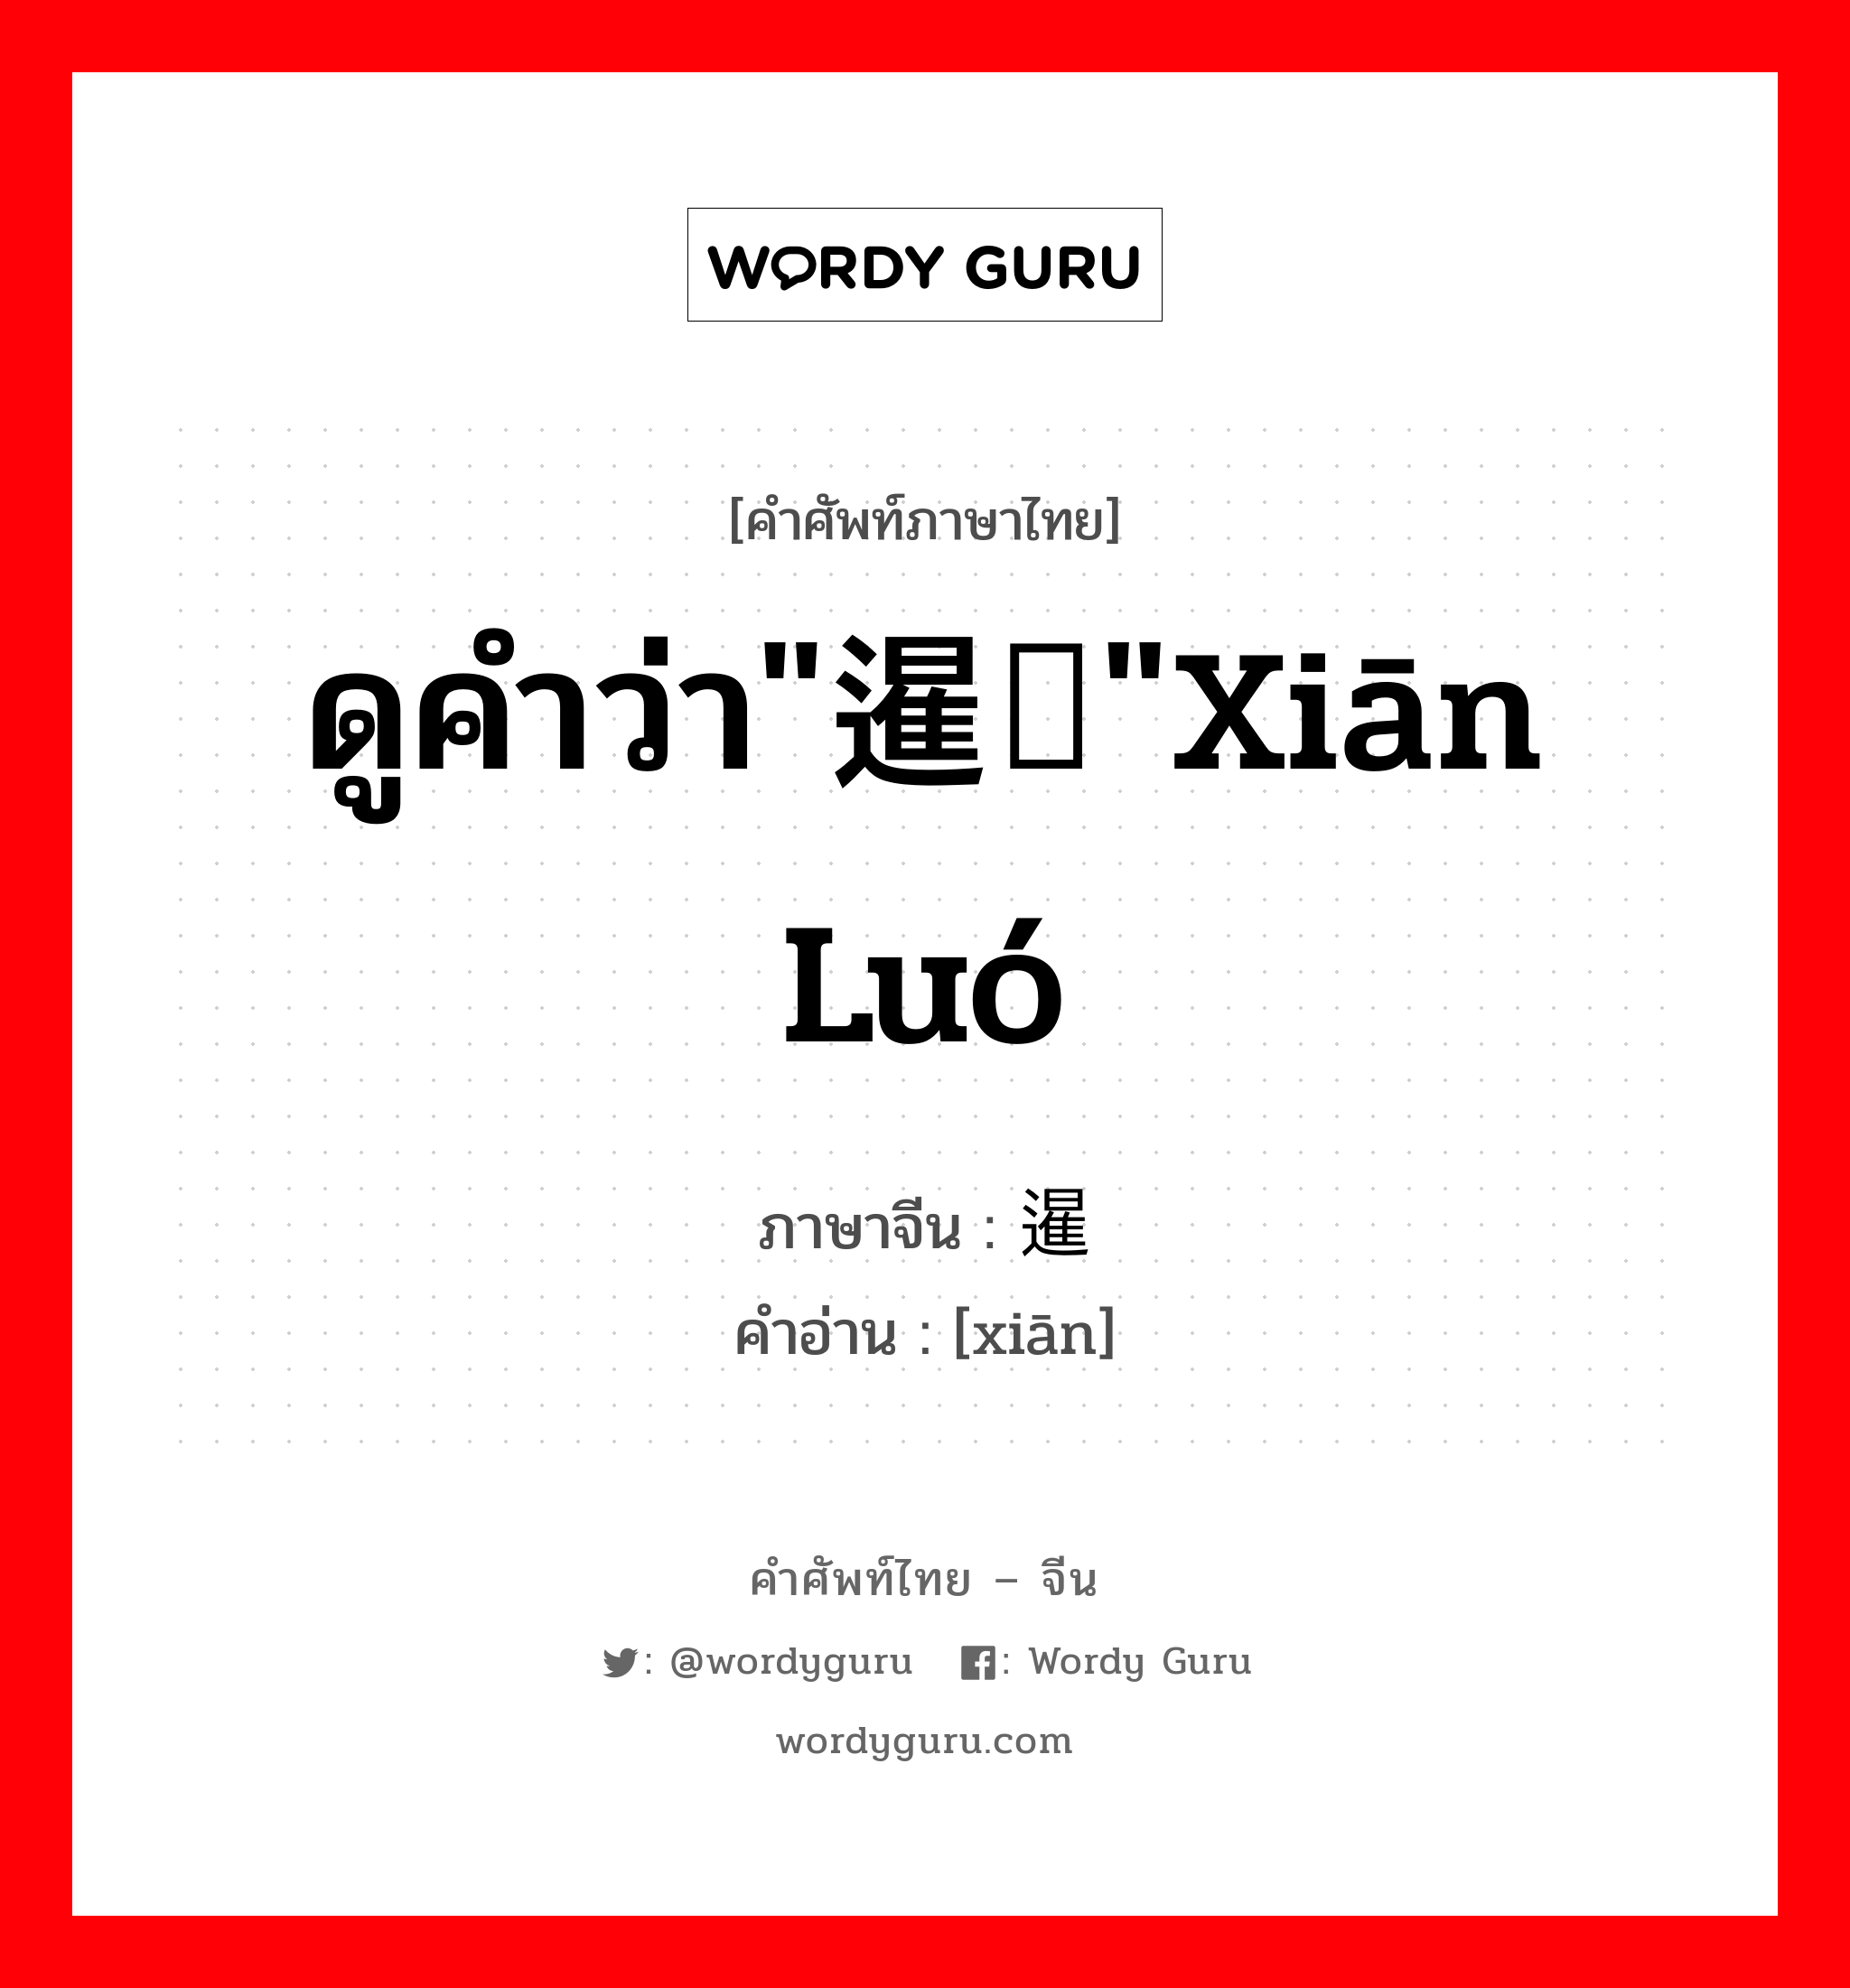 ดูคำว่า"暹罗"xiān luó ภาษาจีนคืออะไร, คำศัพท์ภาษาไทย - จีน ดูคำว่า"暹罗"xiān luó ภาษาจีน 暹 คำอ่าน [xiān]